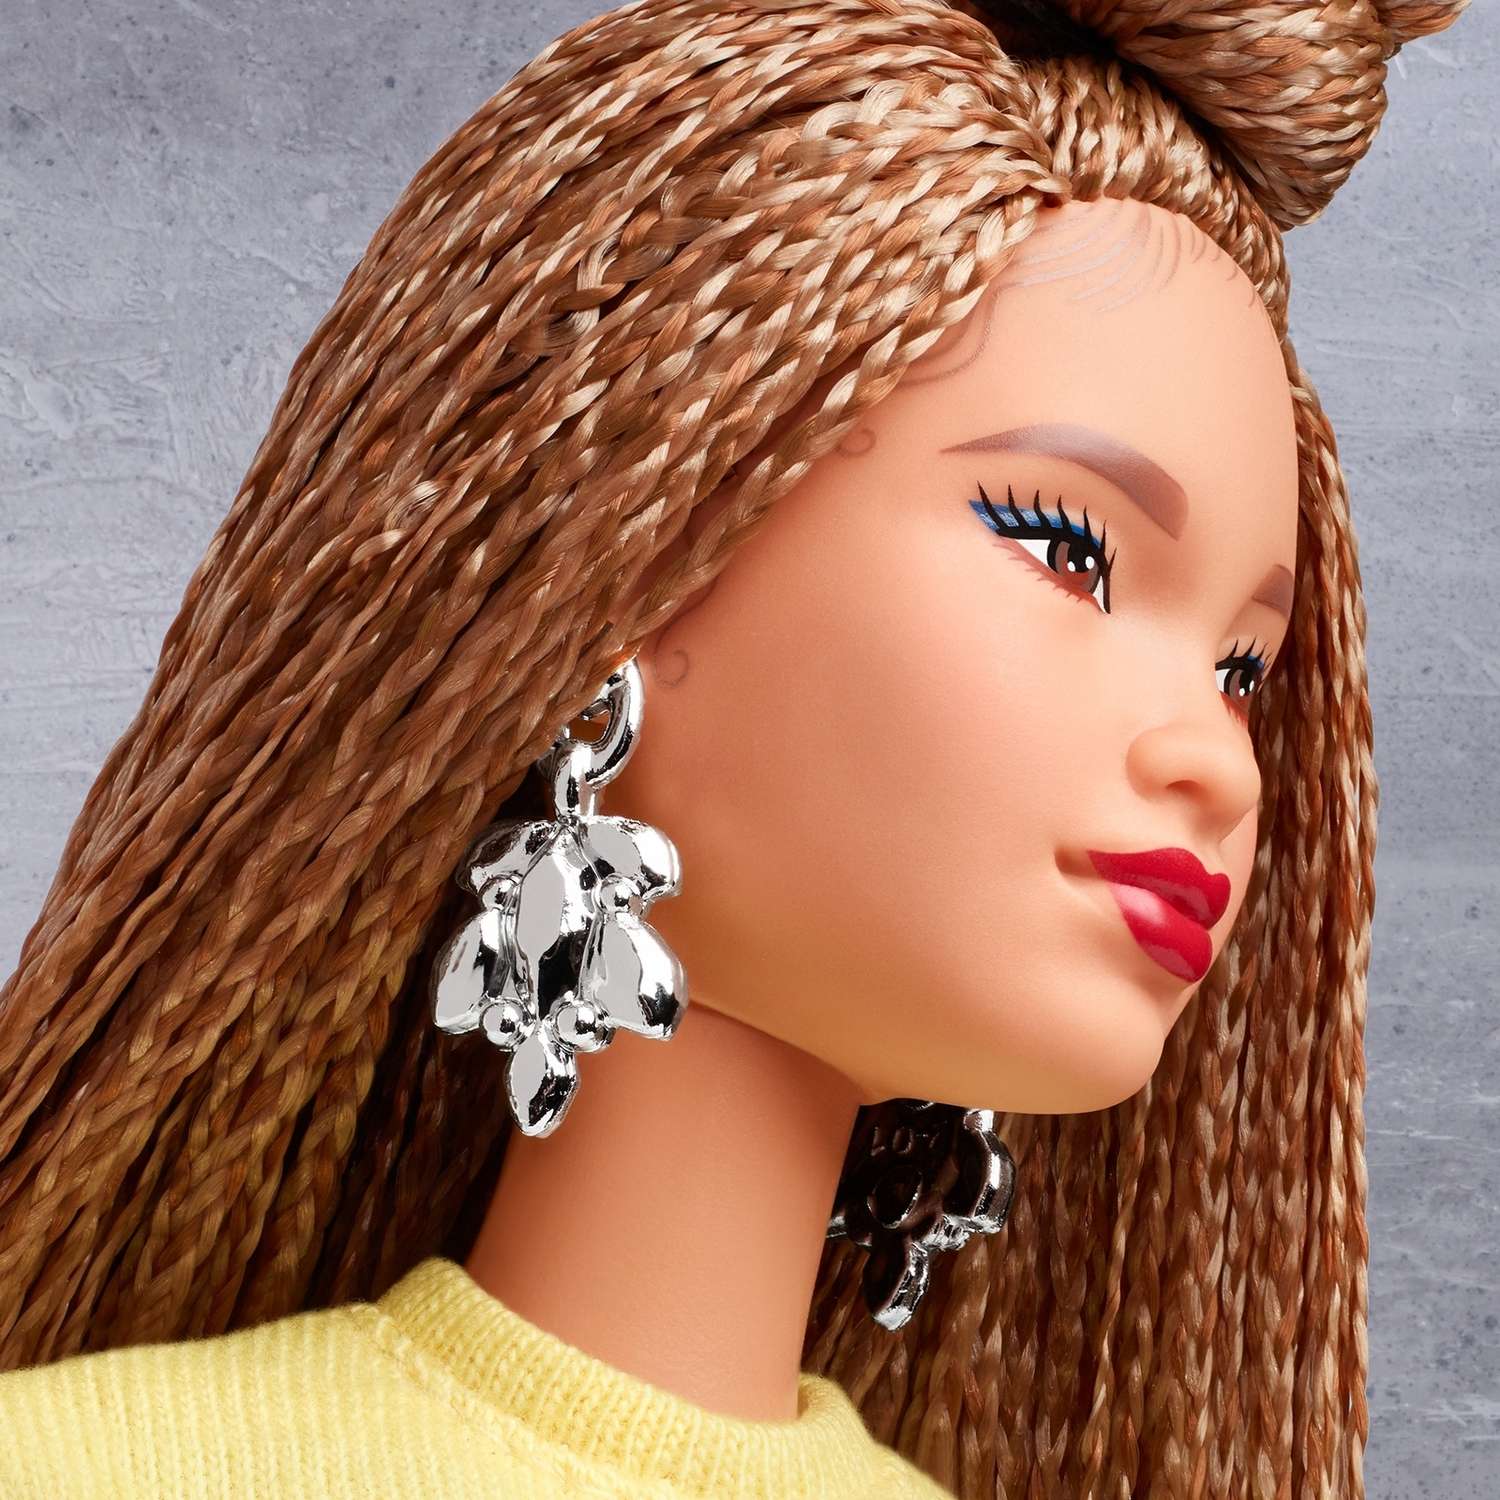 Кукла Barbie коллекционная BMR1959 GHT91 GHT91 - фото 13